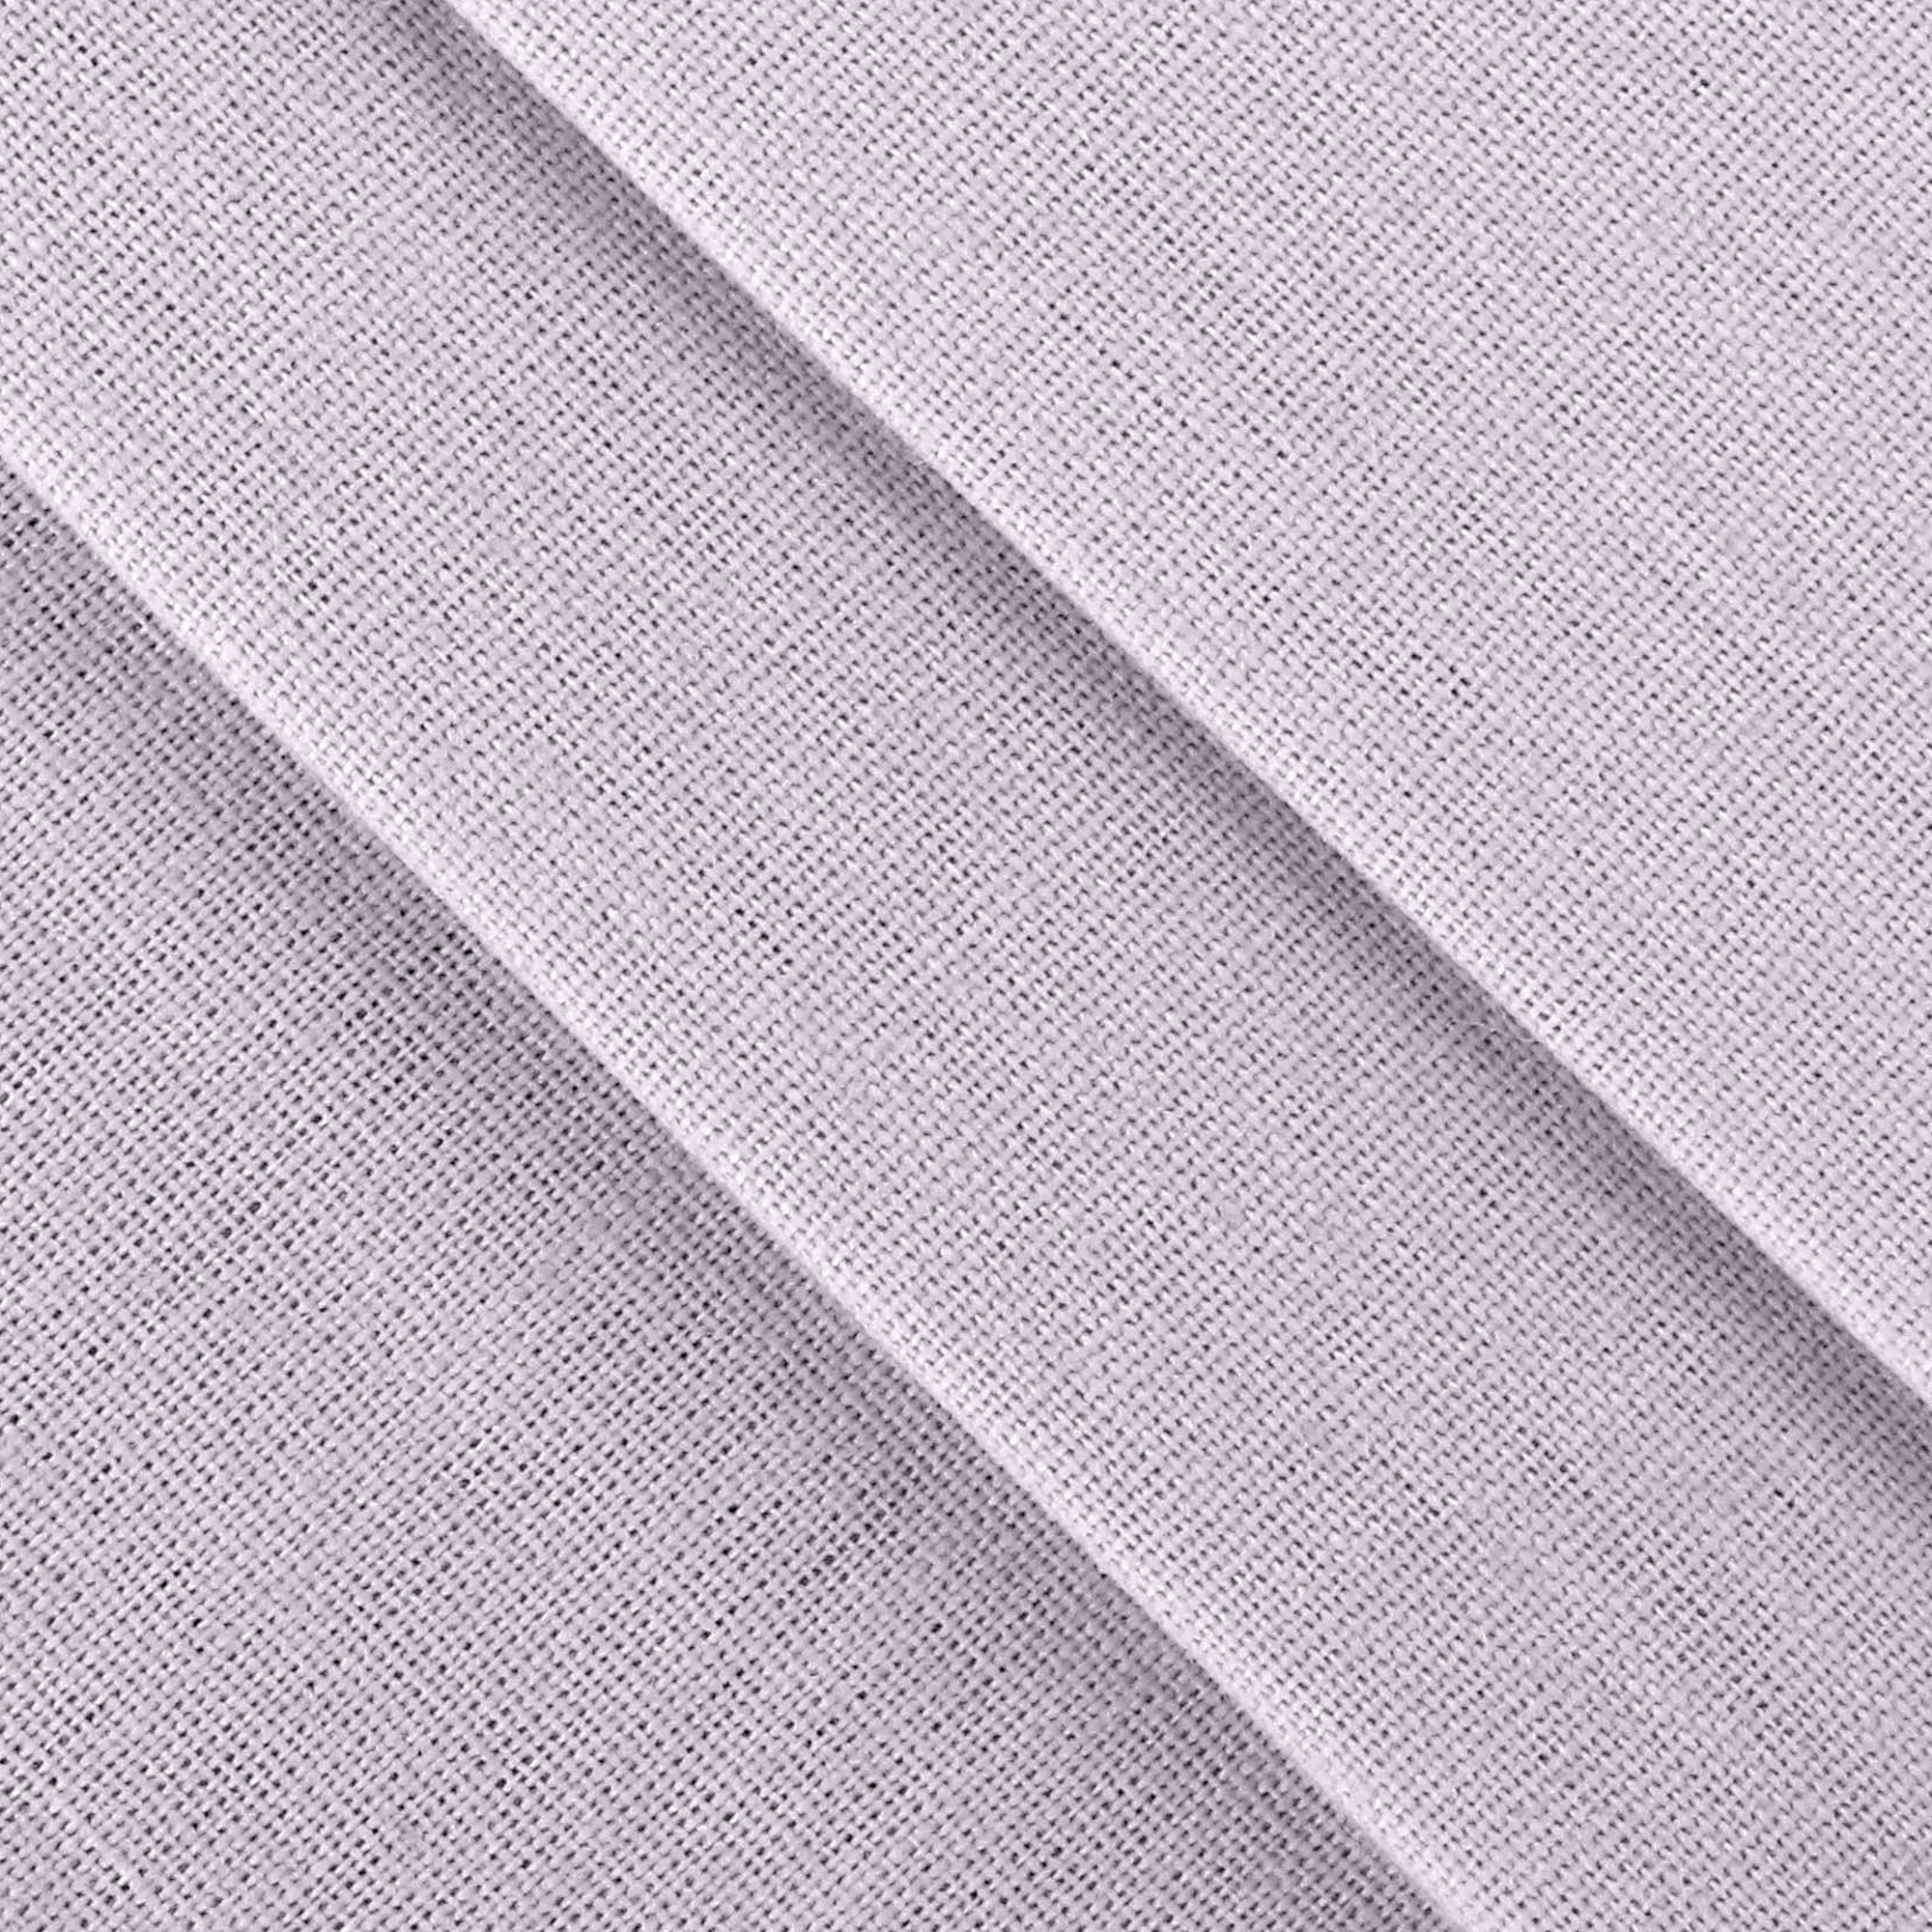 Комплект постельного белья La Besse Ранфорс лиловый Полуторный, размер Полуторный - фото 3